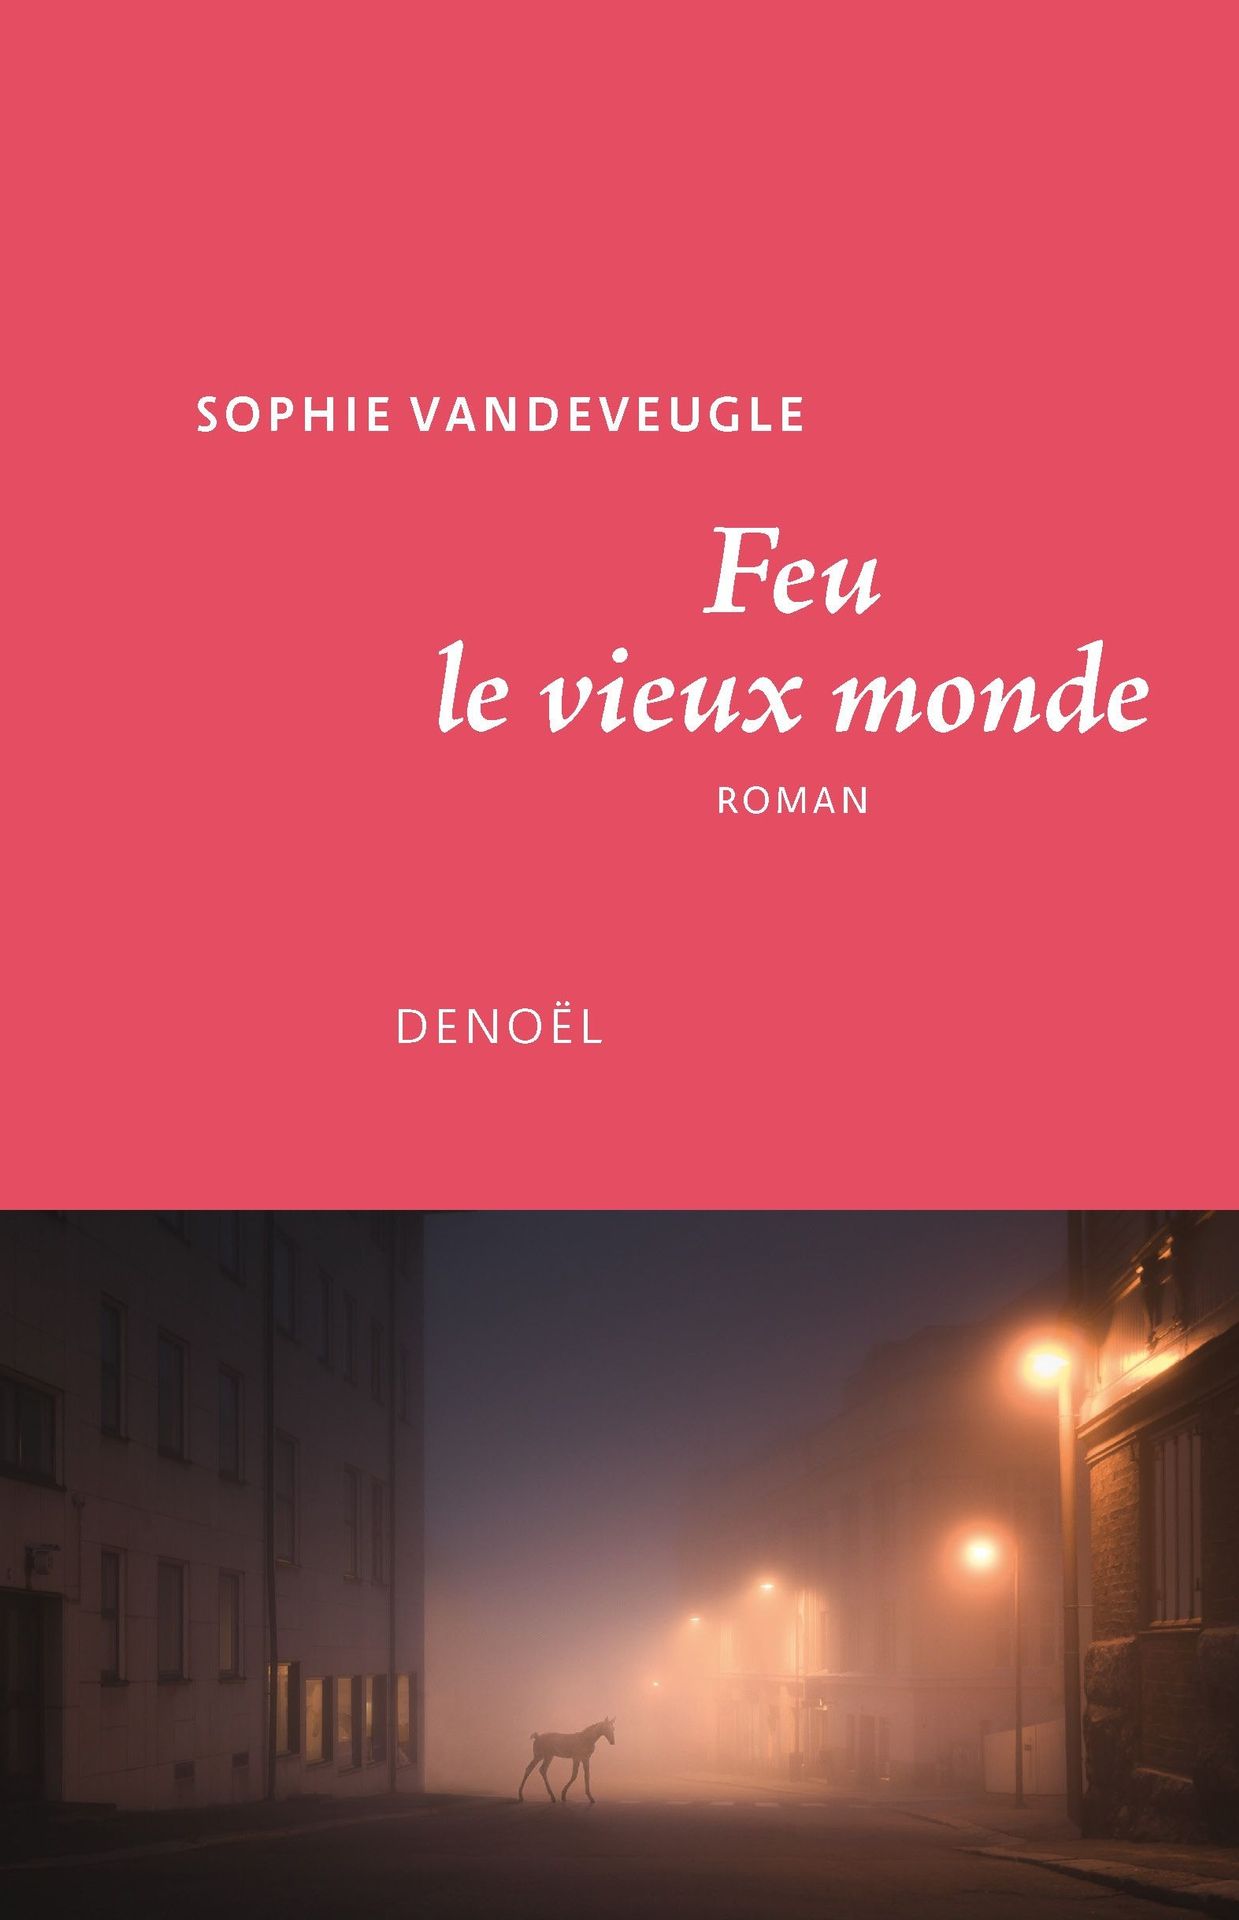 Première de couverture du nouveau roman de Sophie Vandeveugle "Feu le vieux monde".